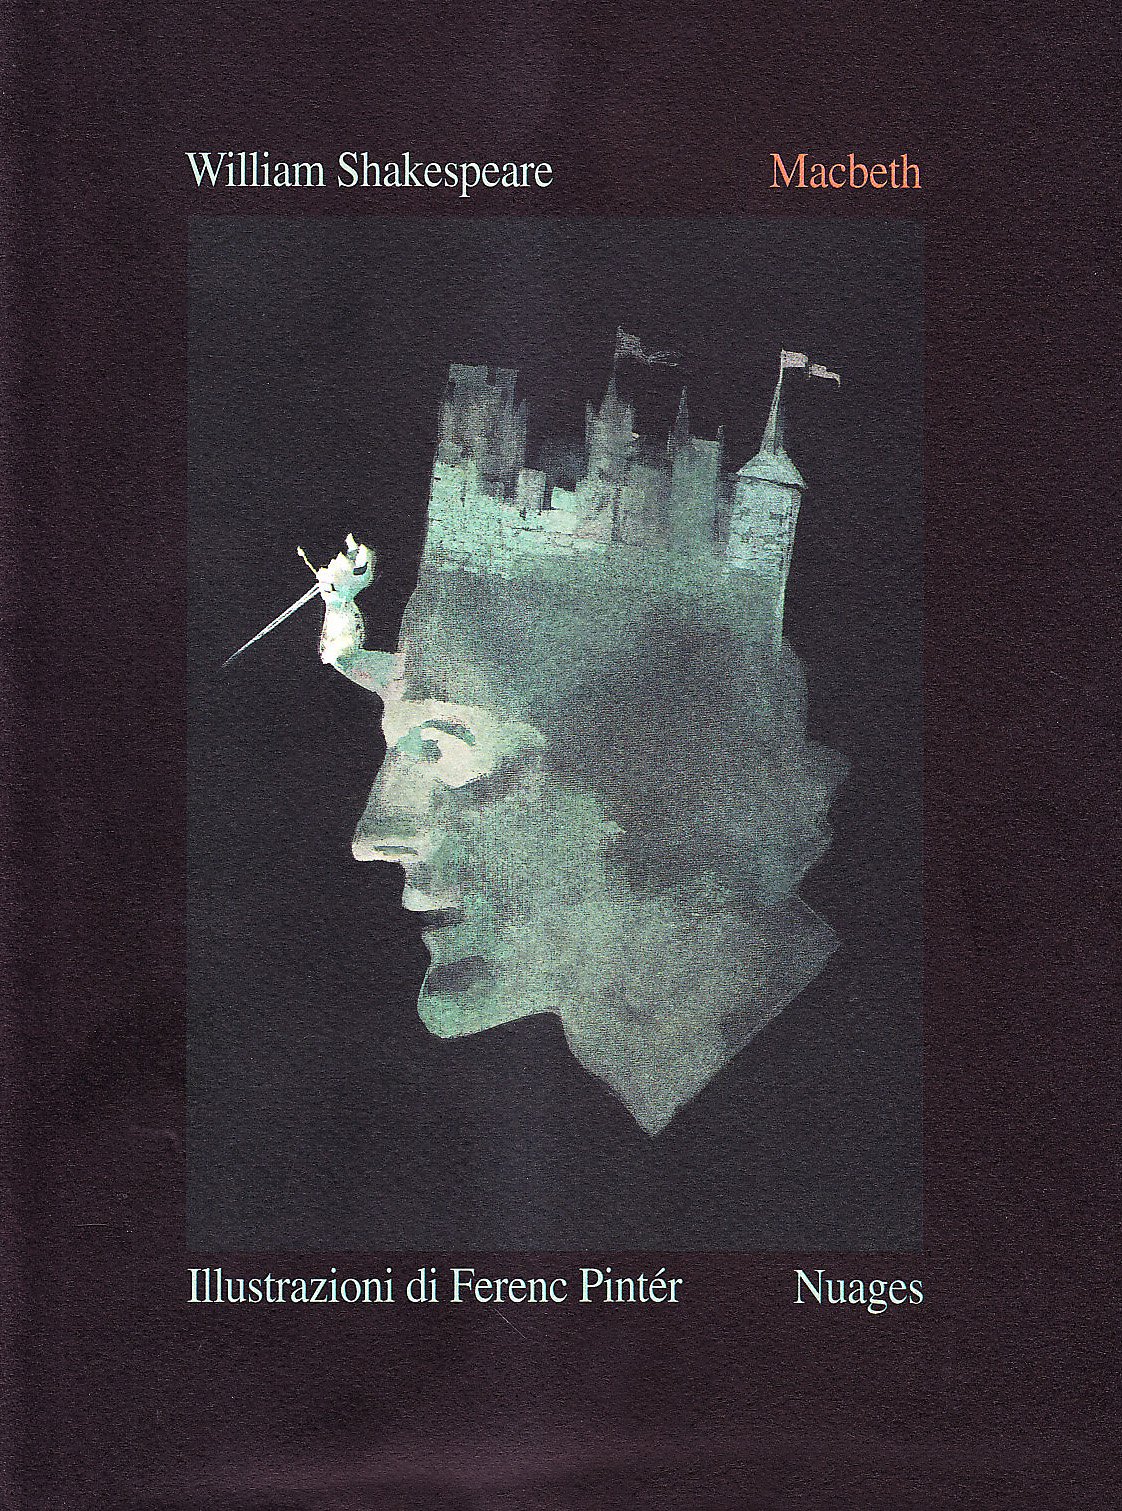 Libri William Shakespeare - Macbeth NUOVO SIGILLATO, EDIZIONE DEL 18/12/2001 SUBITO DISPONIBILE